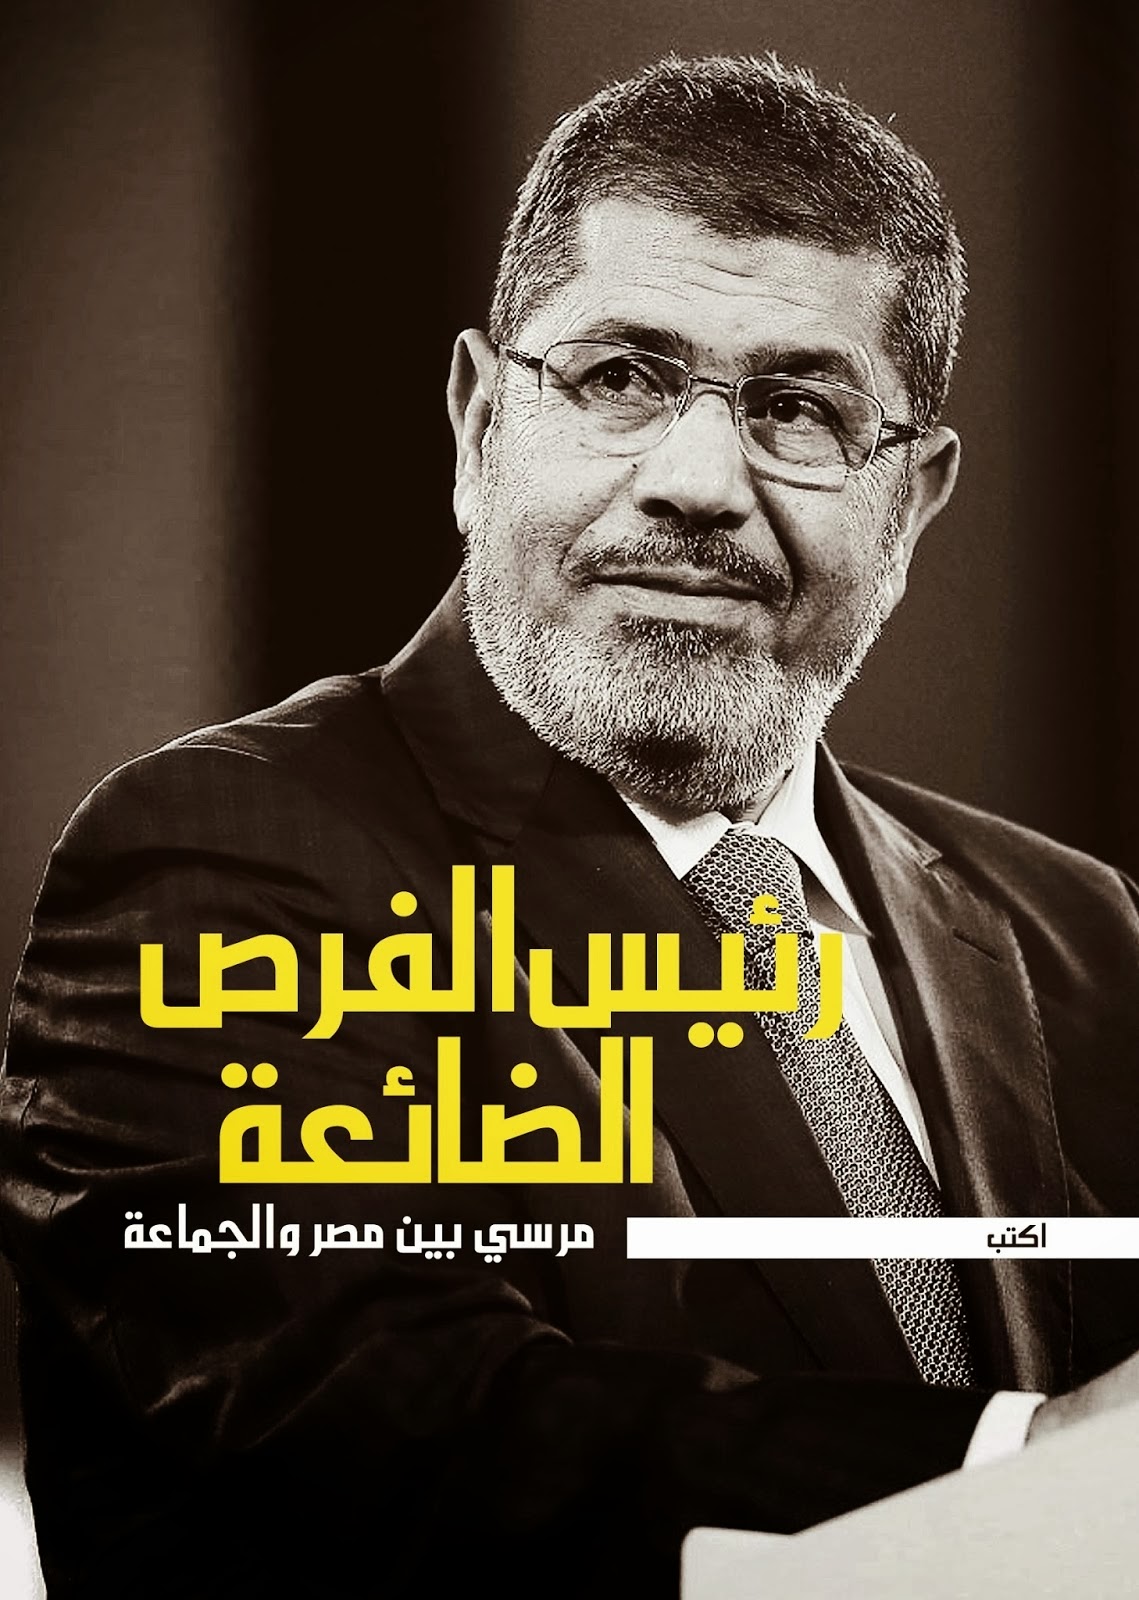 ** القصة الخامسة / فرصة ضائعة من مرسى لما كان رئيس الدولة ؟؟